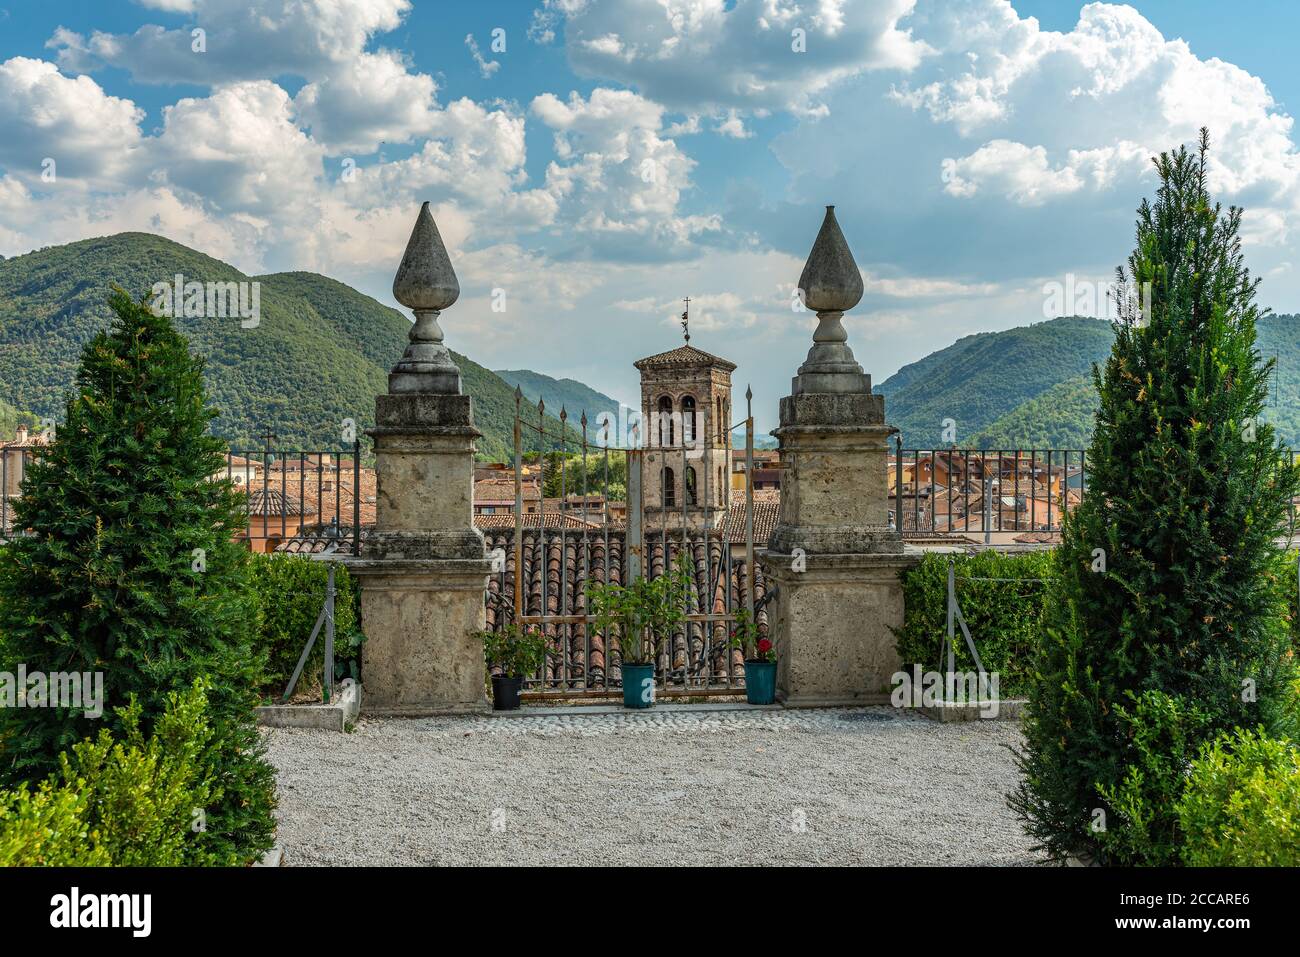 Una splendida vista dai giardini di Palazzo Vincentini verso la pianura Rieti e i Monti Sabini. Regione Lazio, Italia, Europa Foto Stock